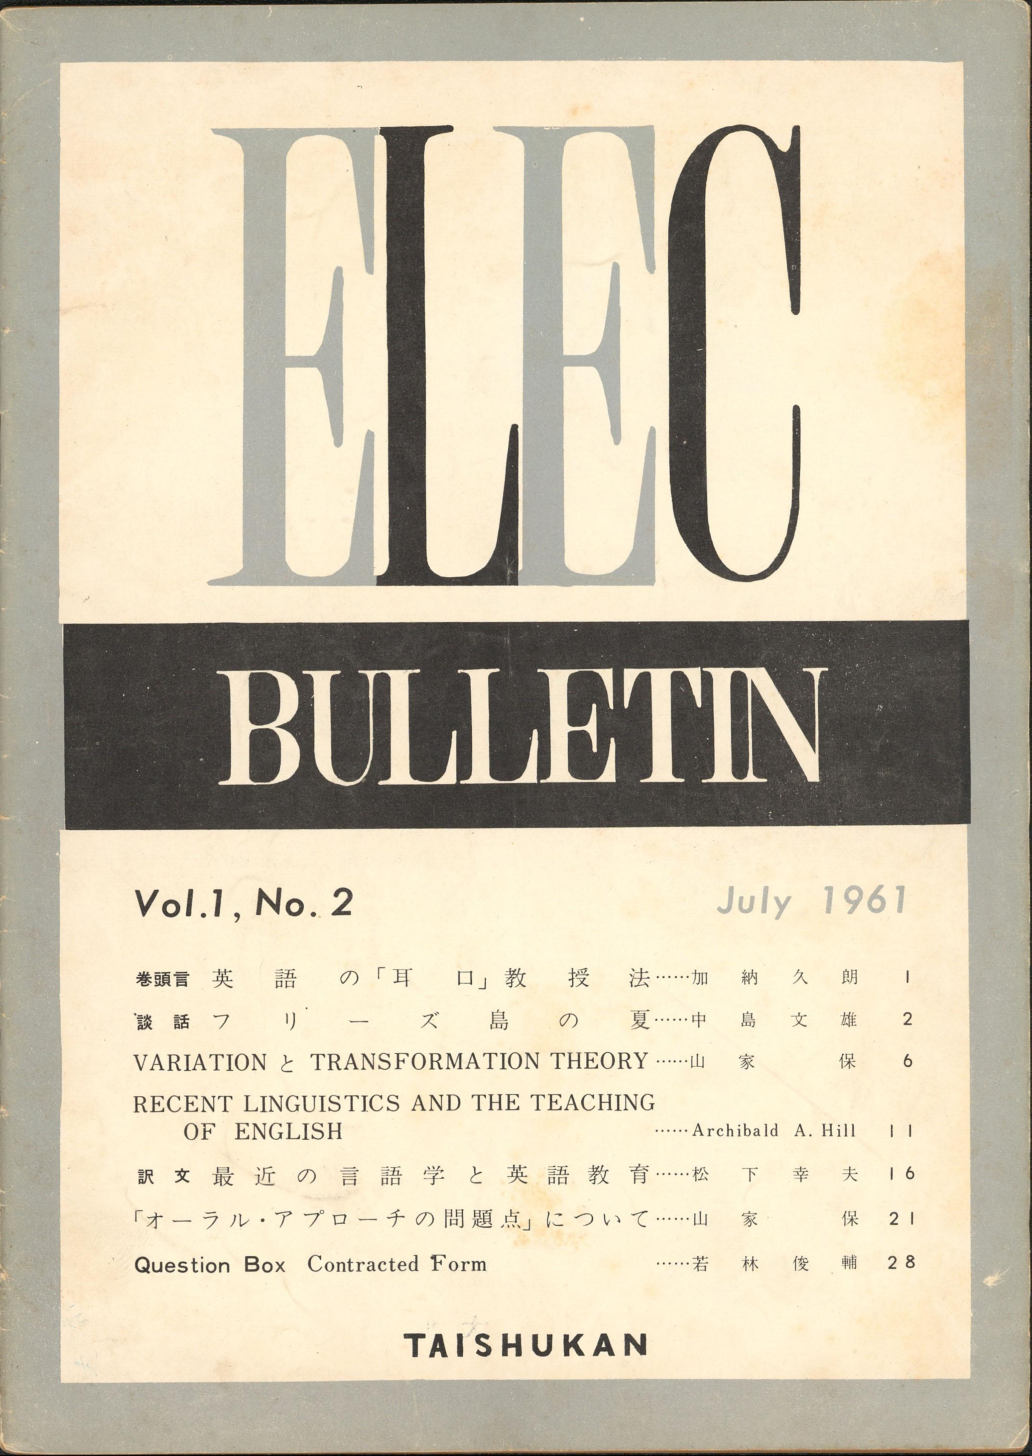 ELEC BULLETIN Vol. 1, No. 2　July 1961